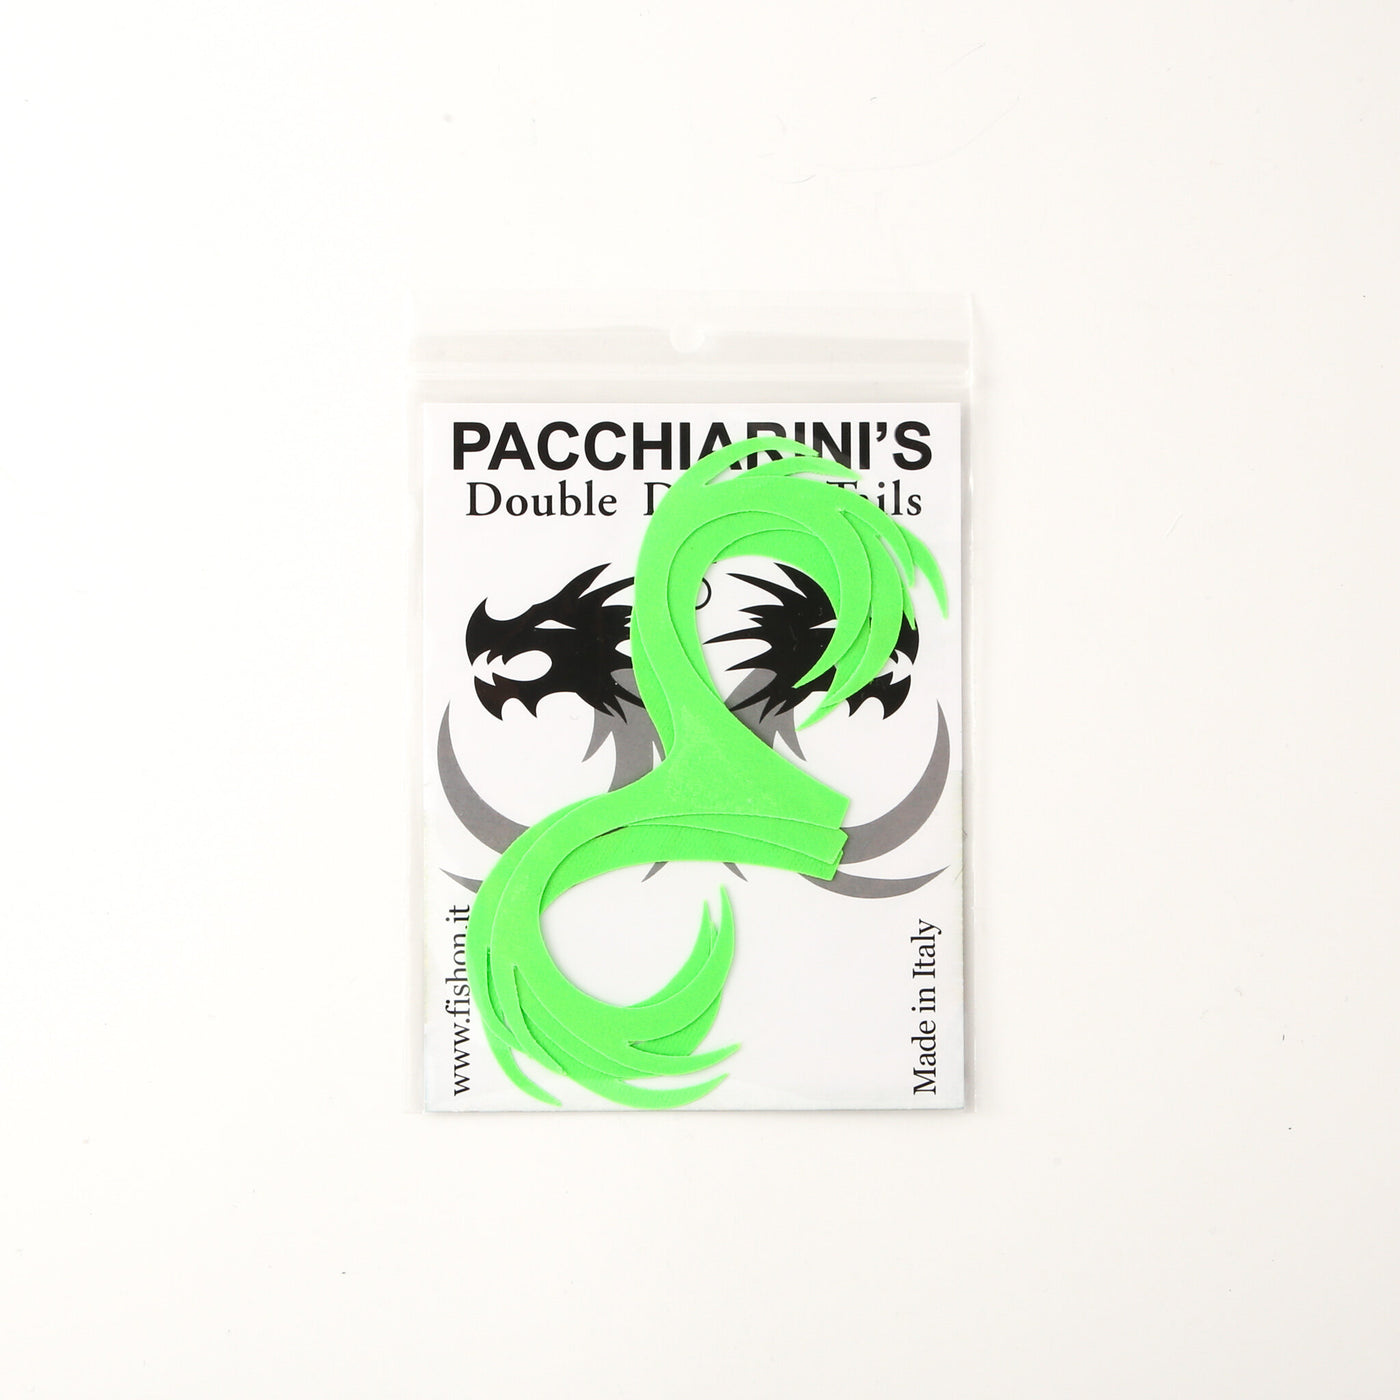 Pacchiarini's Double Dragon Tail